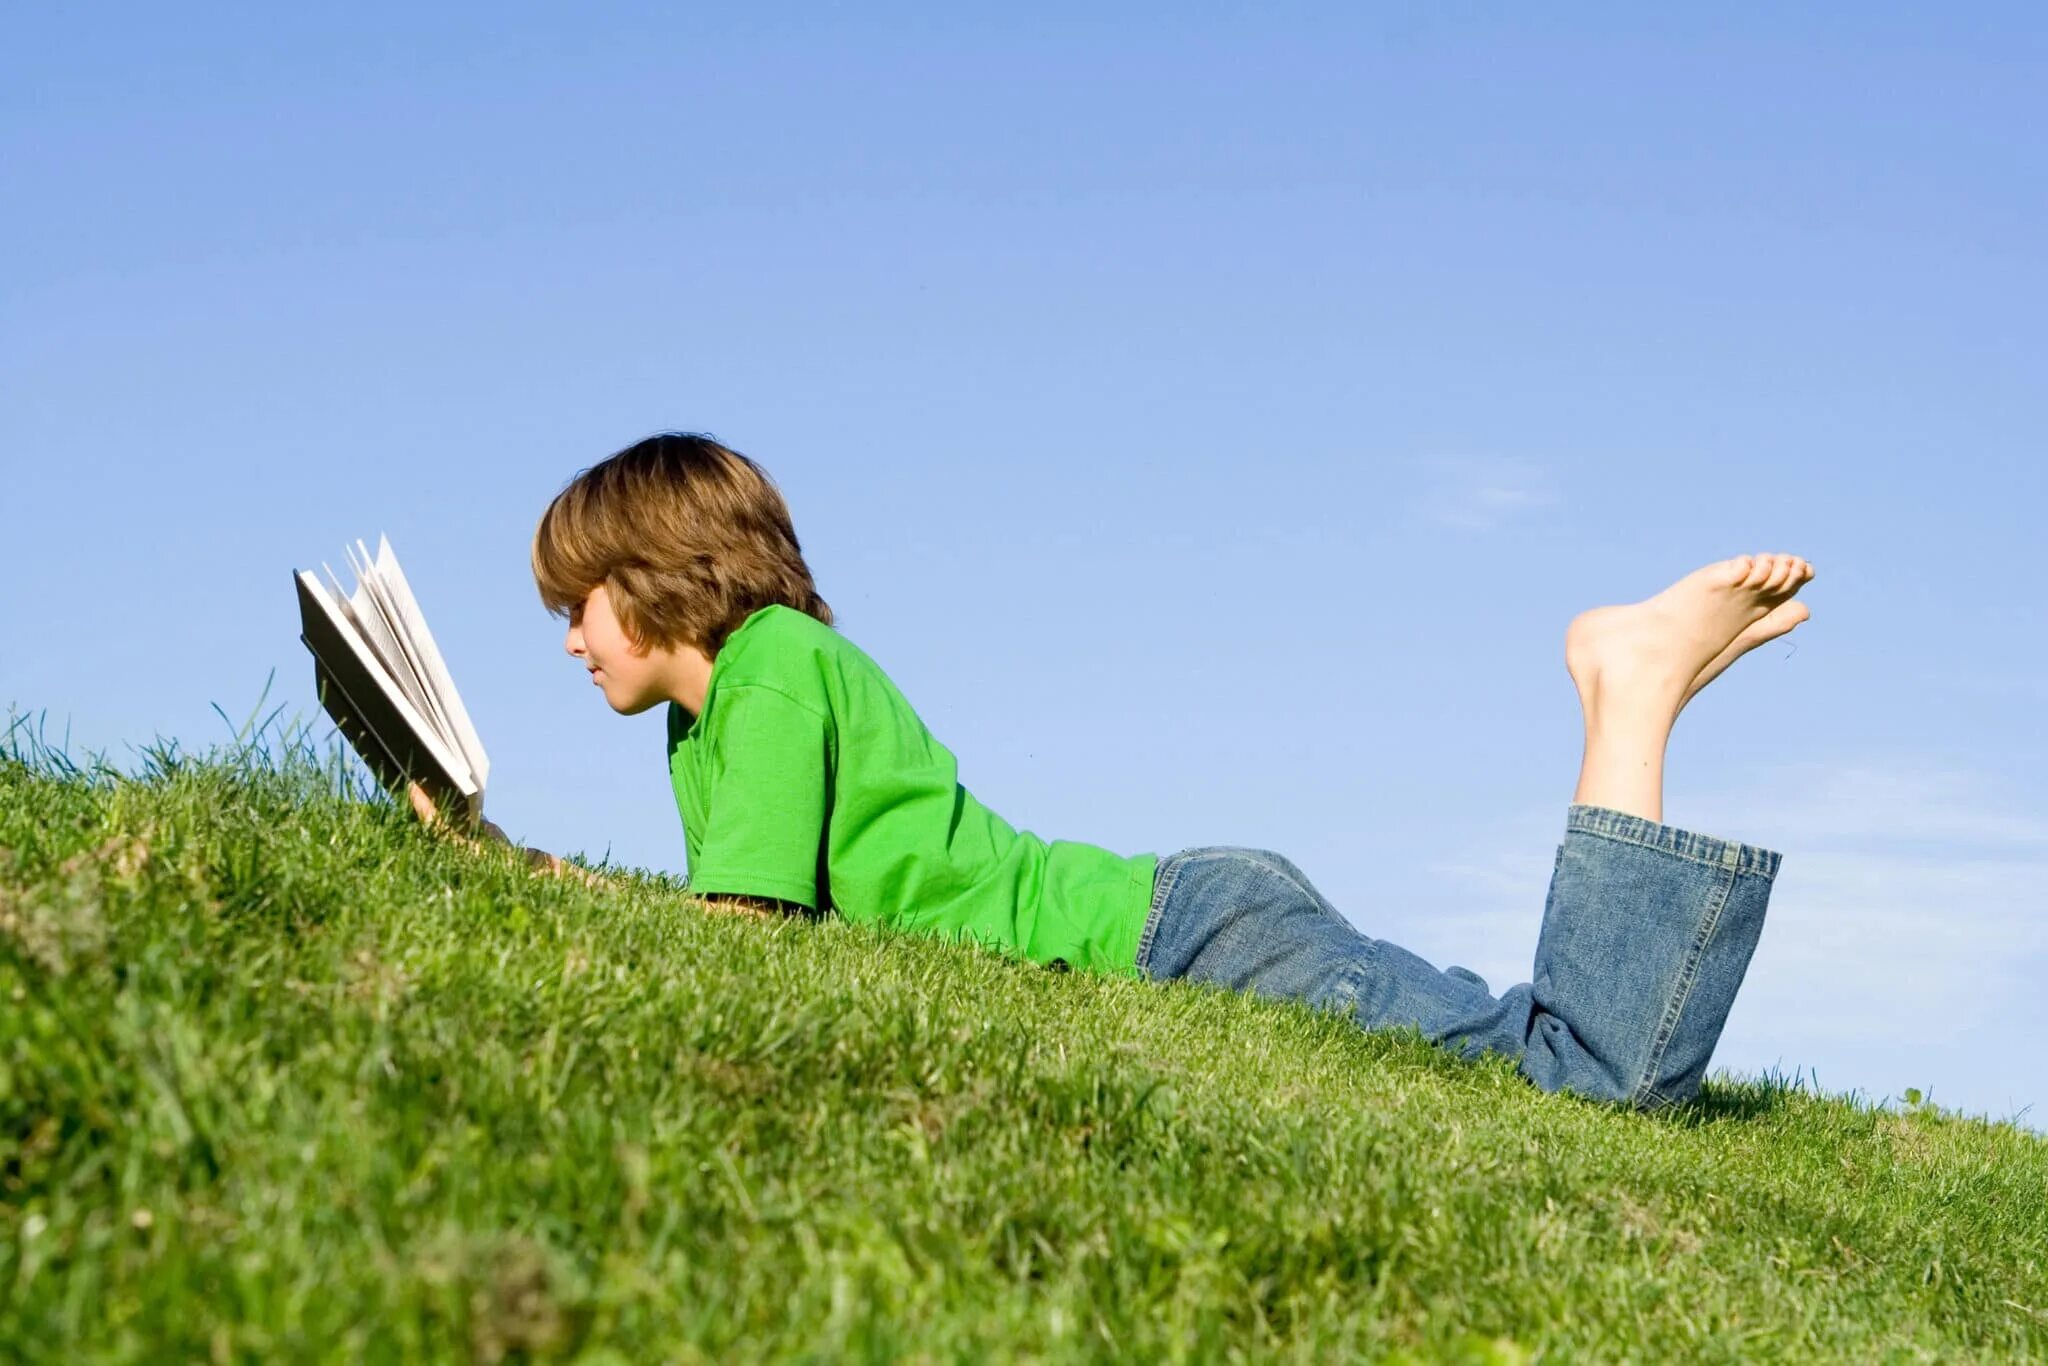 I read a book per month. Босая читает книгу. Читаем летом. Ребенок и чтение летом фото. Босоногий мальчик читает книгу.